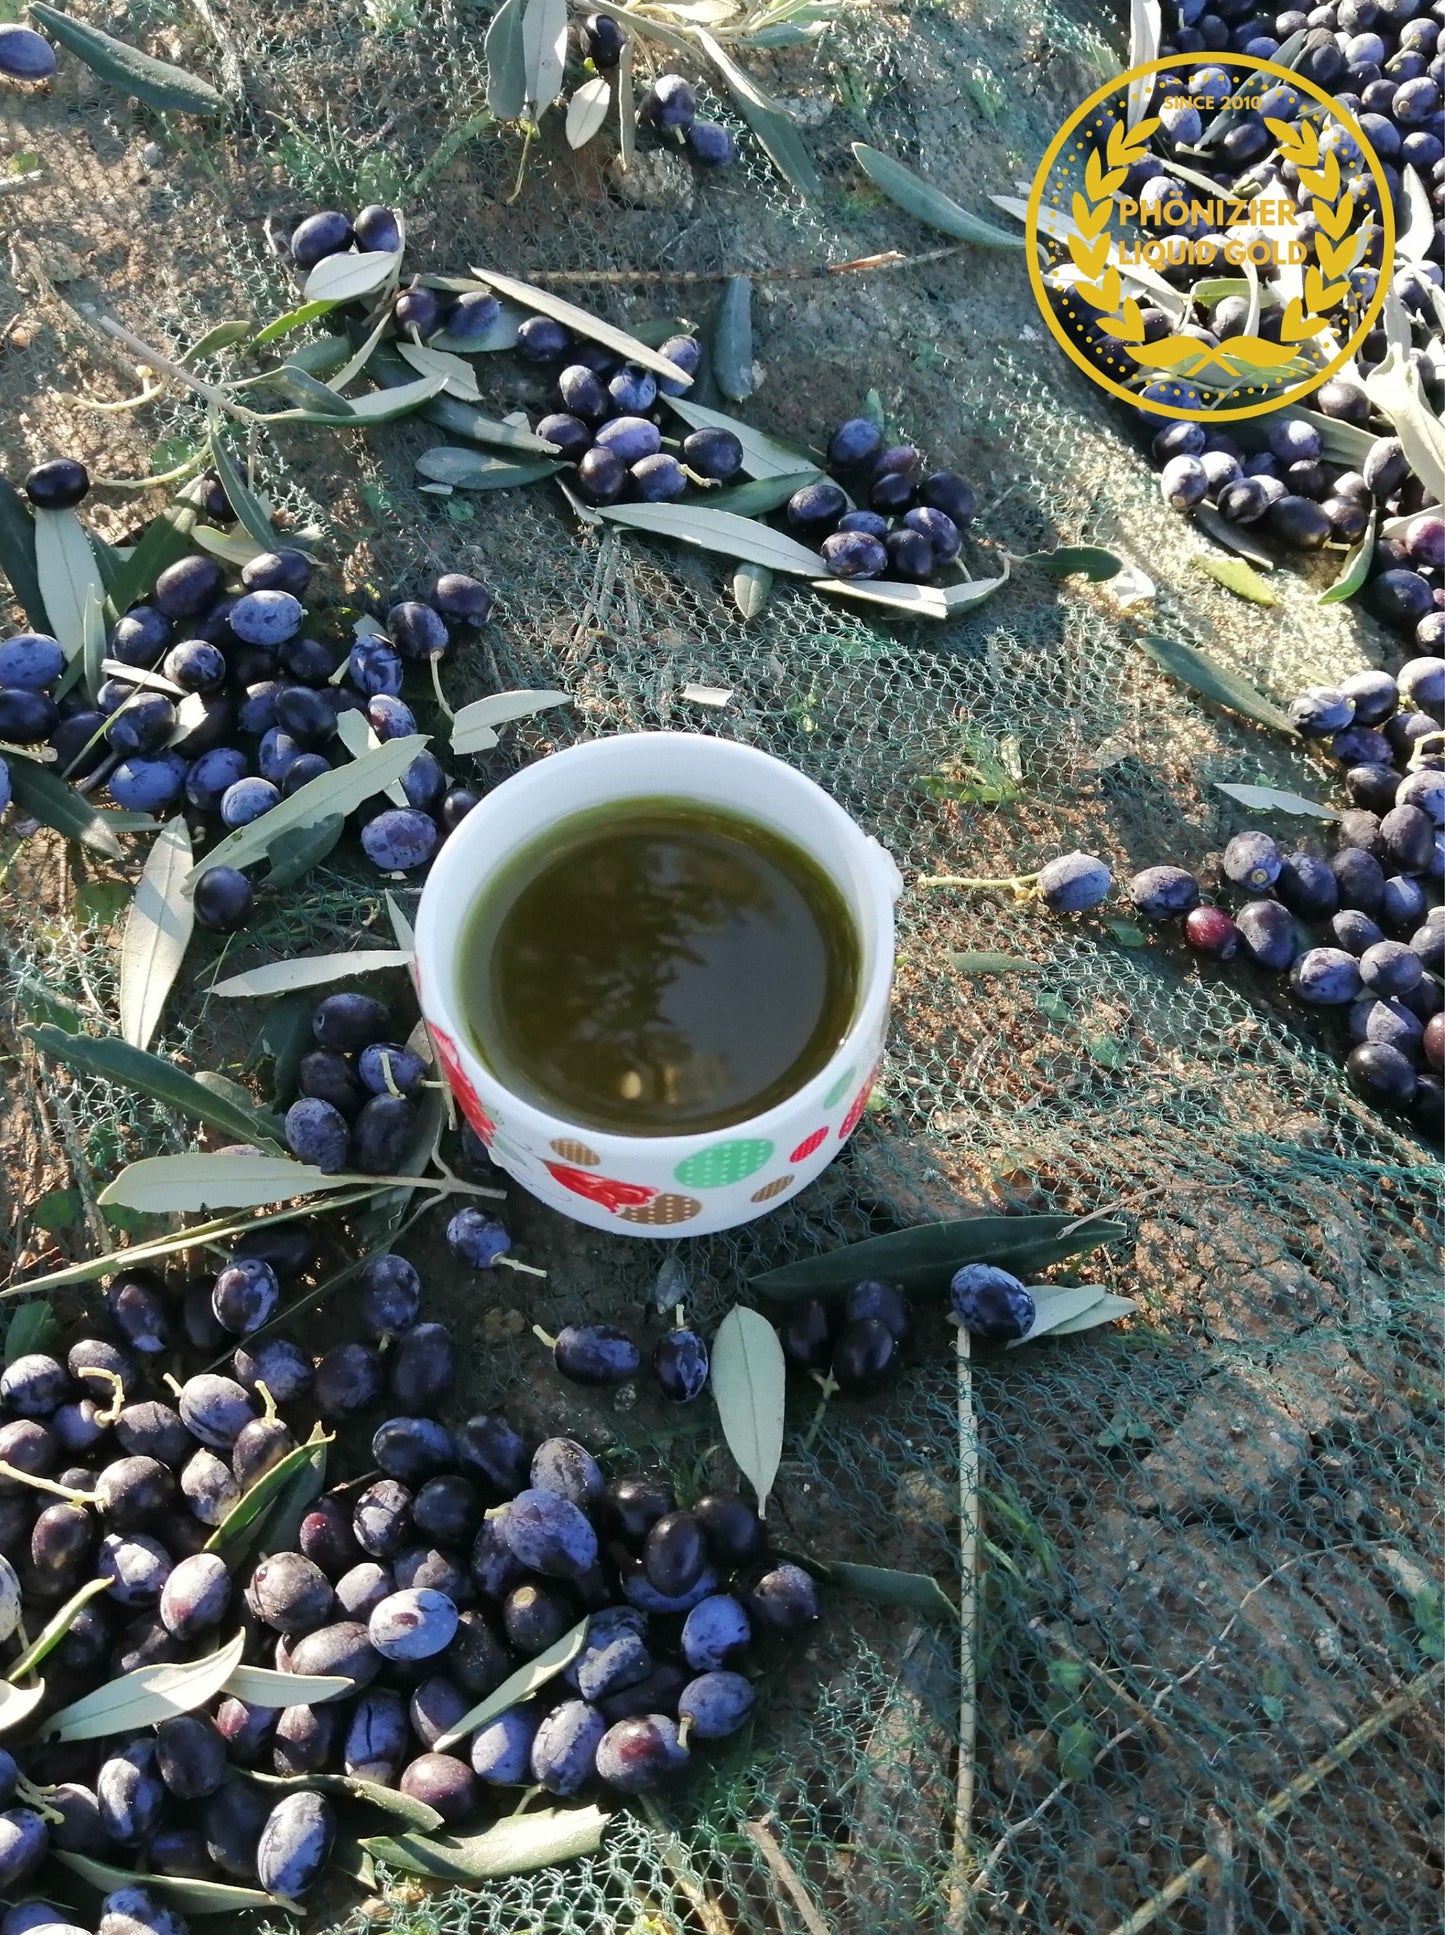 Ernte 2021/2022 Phönizier Liquid Gold - CHETOUI Natives Olivenöl Extra Virgin 750 ml niedriger Säuregehalt